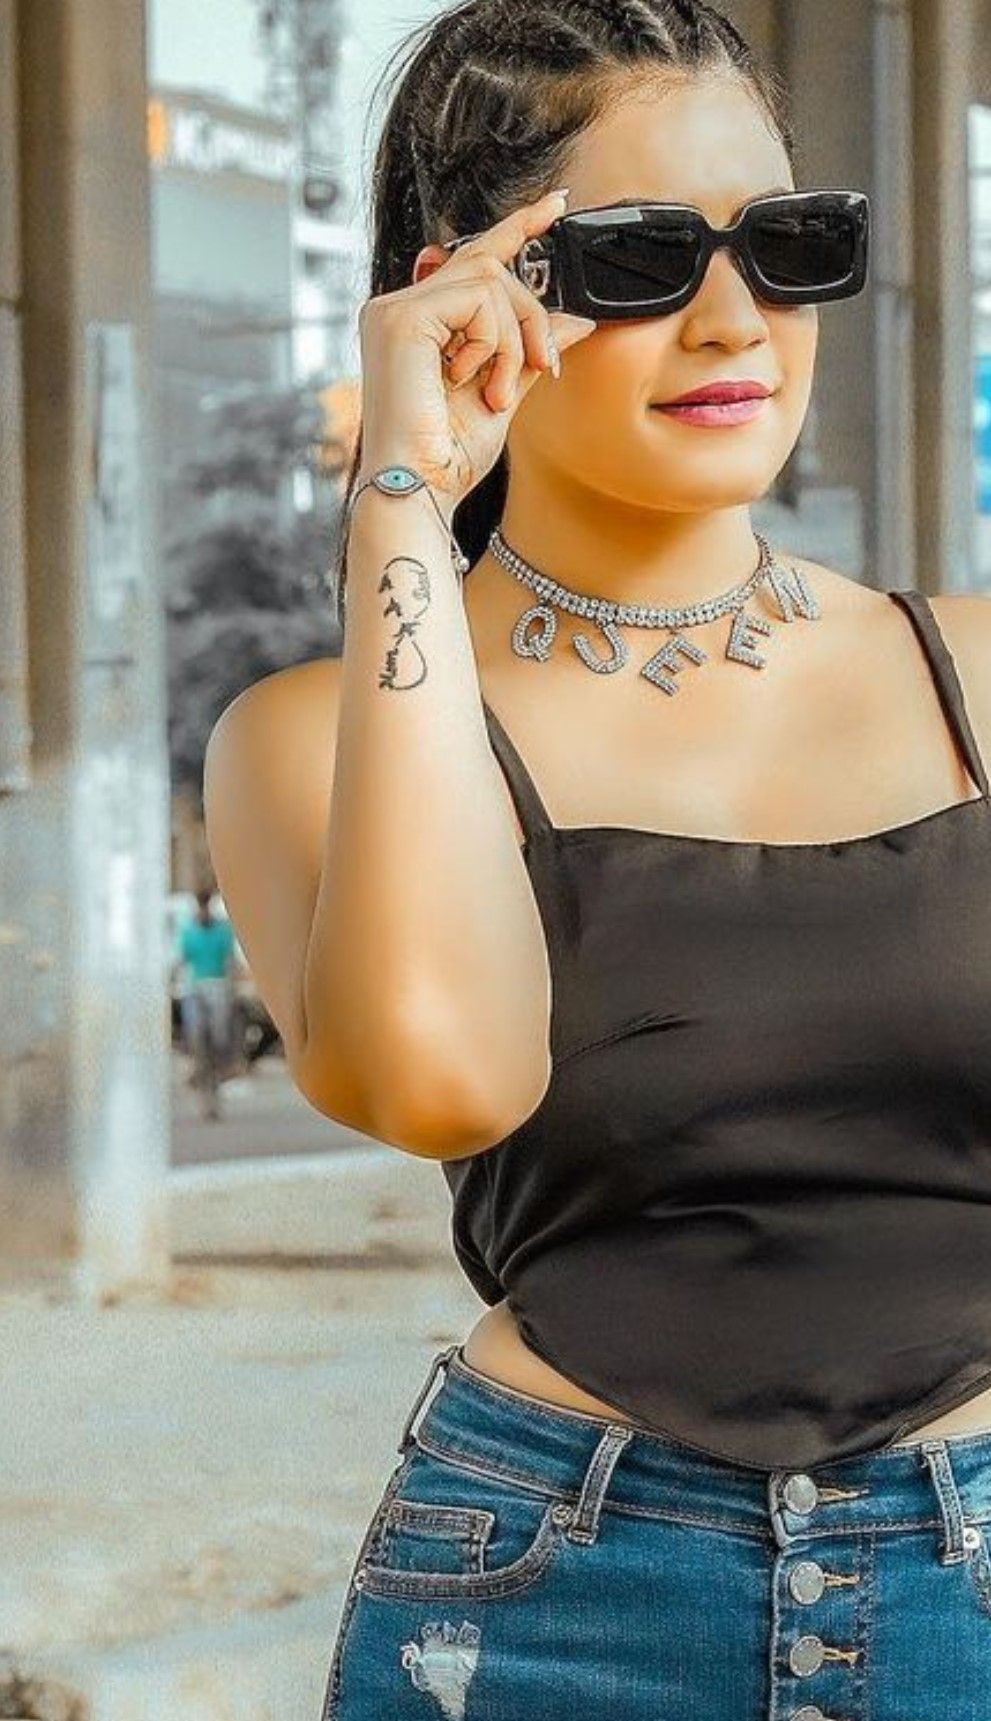 Kritika Malik's Infinity symbol tattoo